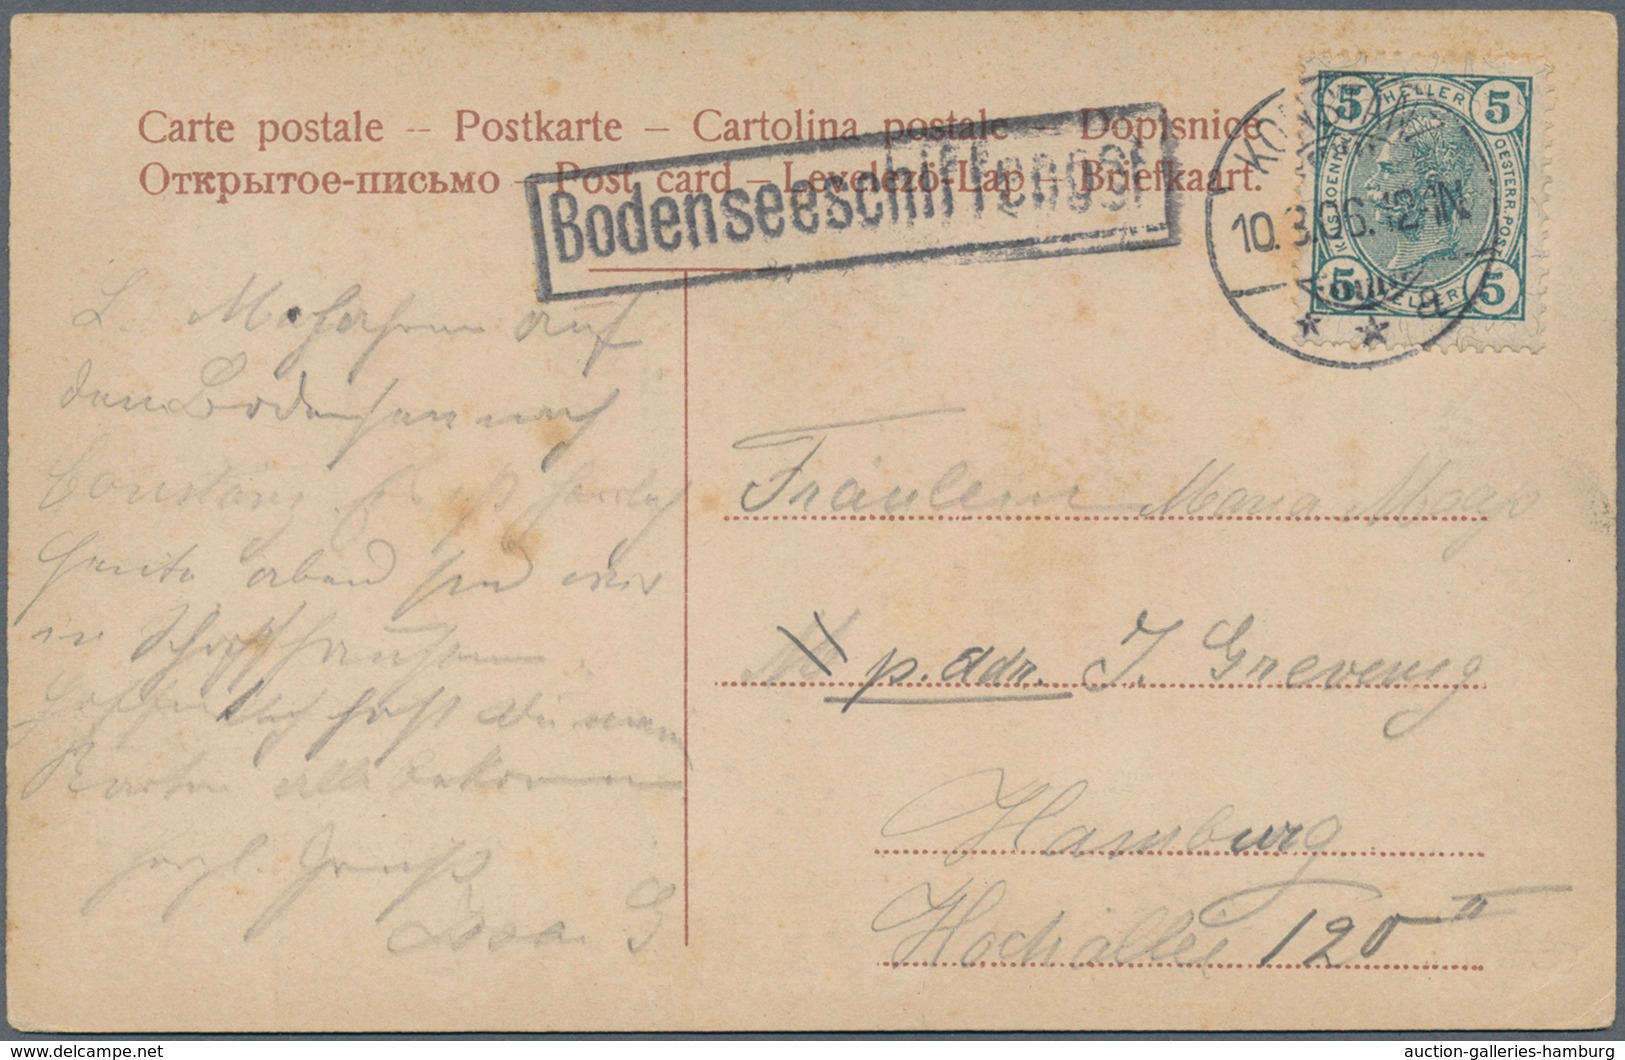 Österreich: 1830/1920 (ca.), Partie von ca. 56 Belegen, dabei etliche markenlose Briefe/Postscheine